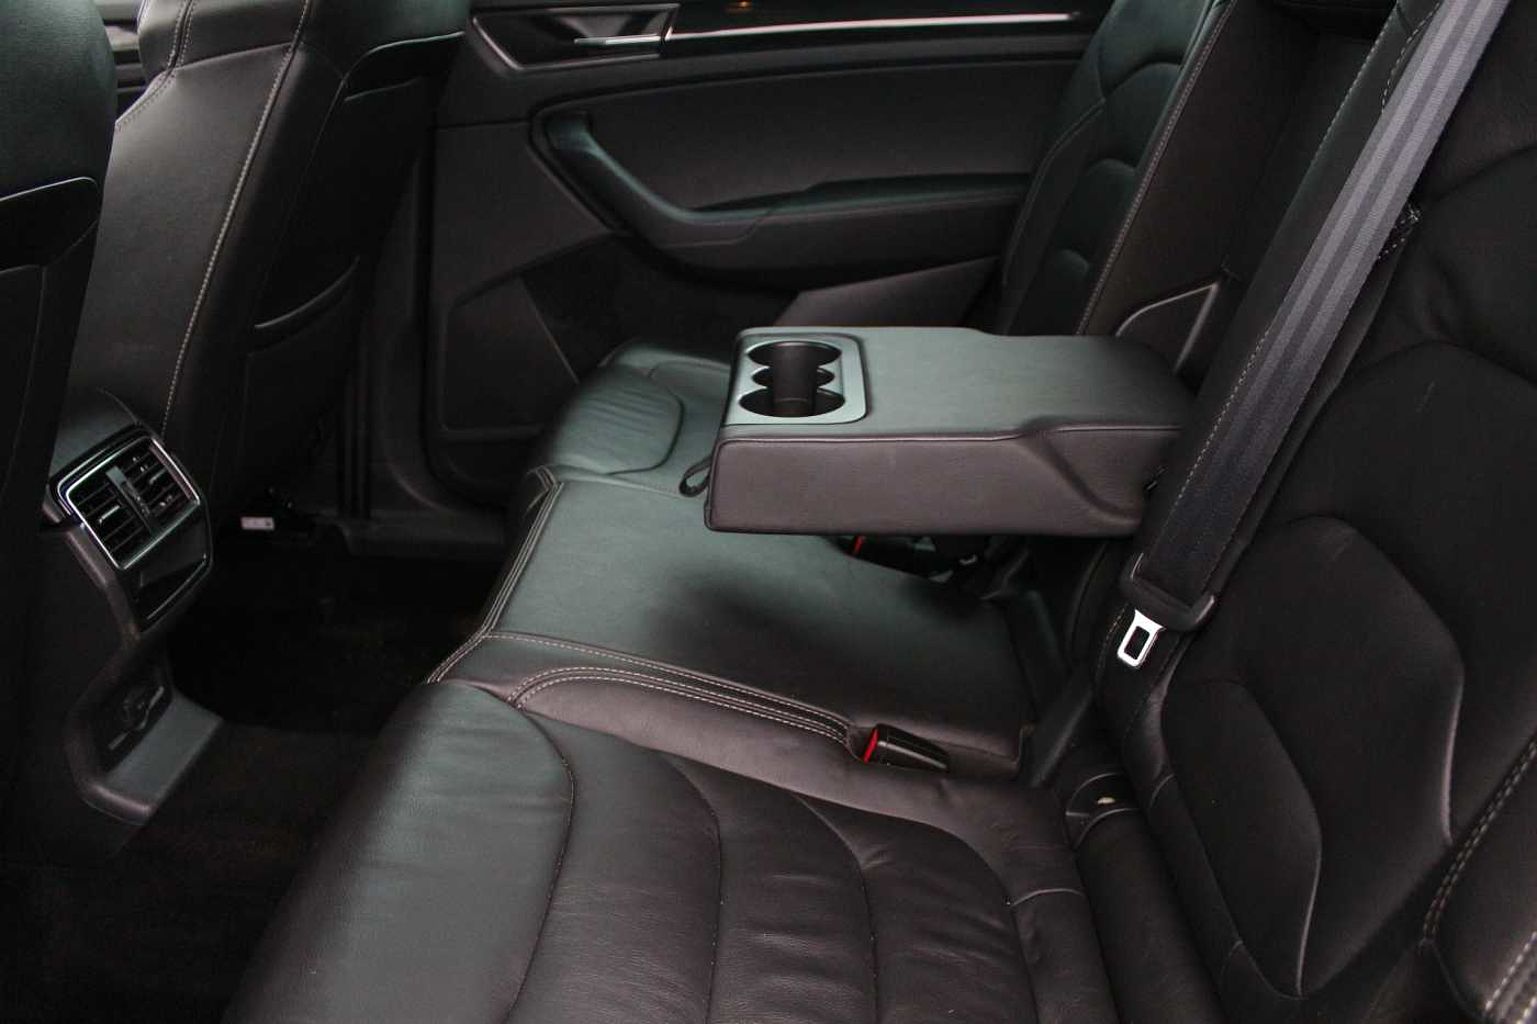 SKODA Kodiaq 2.0TDI (150ps) 4X4 SE L 7 seats DSG SUV